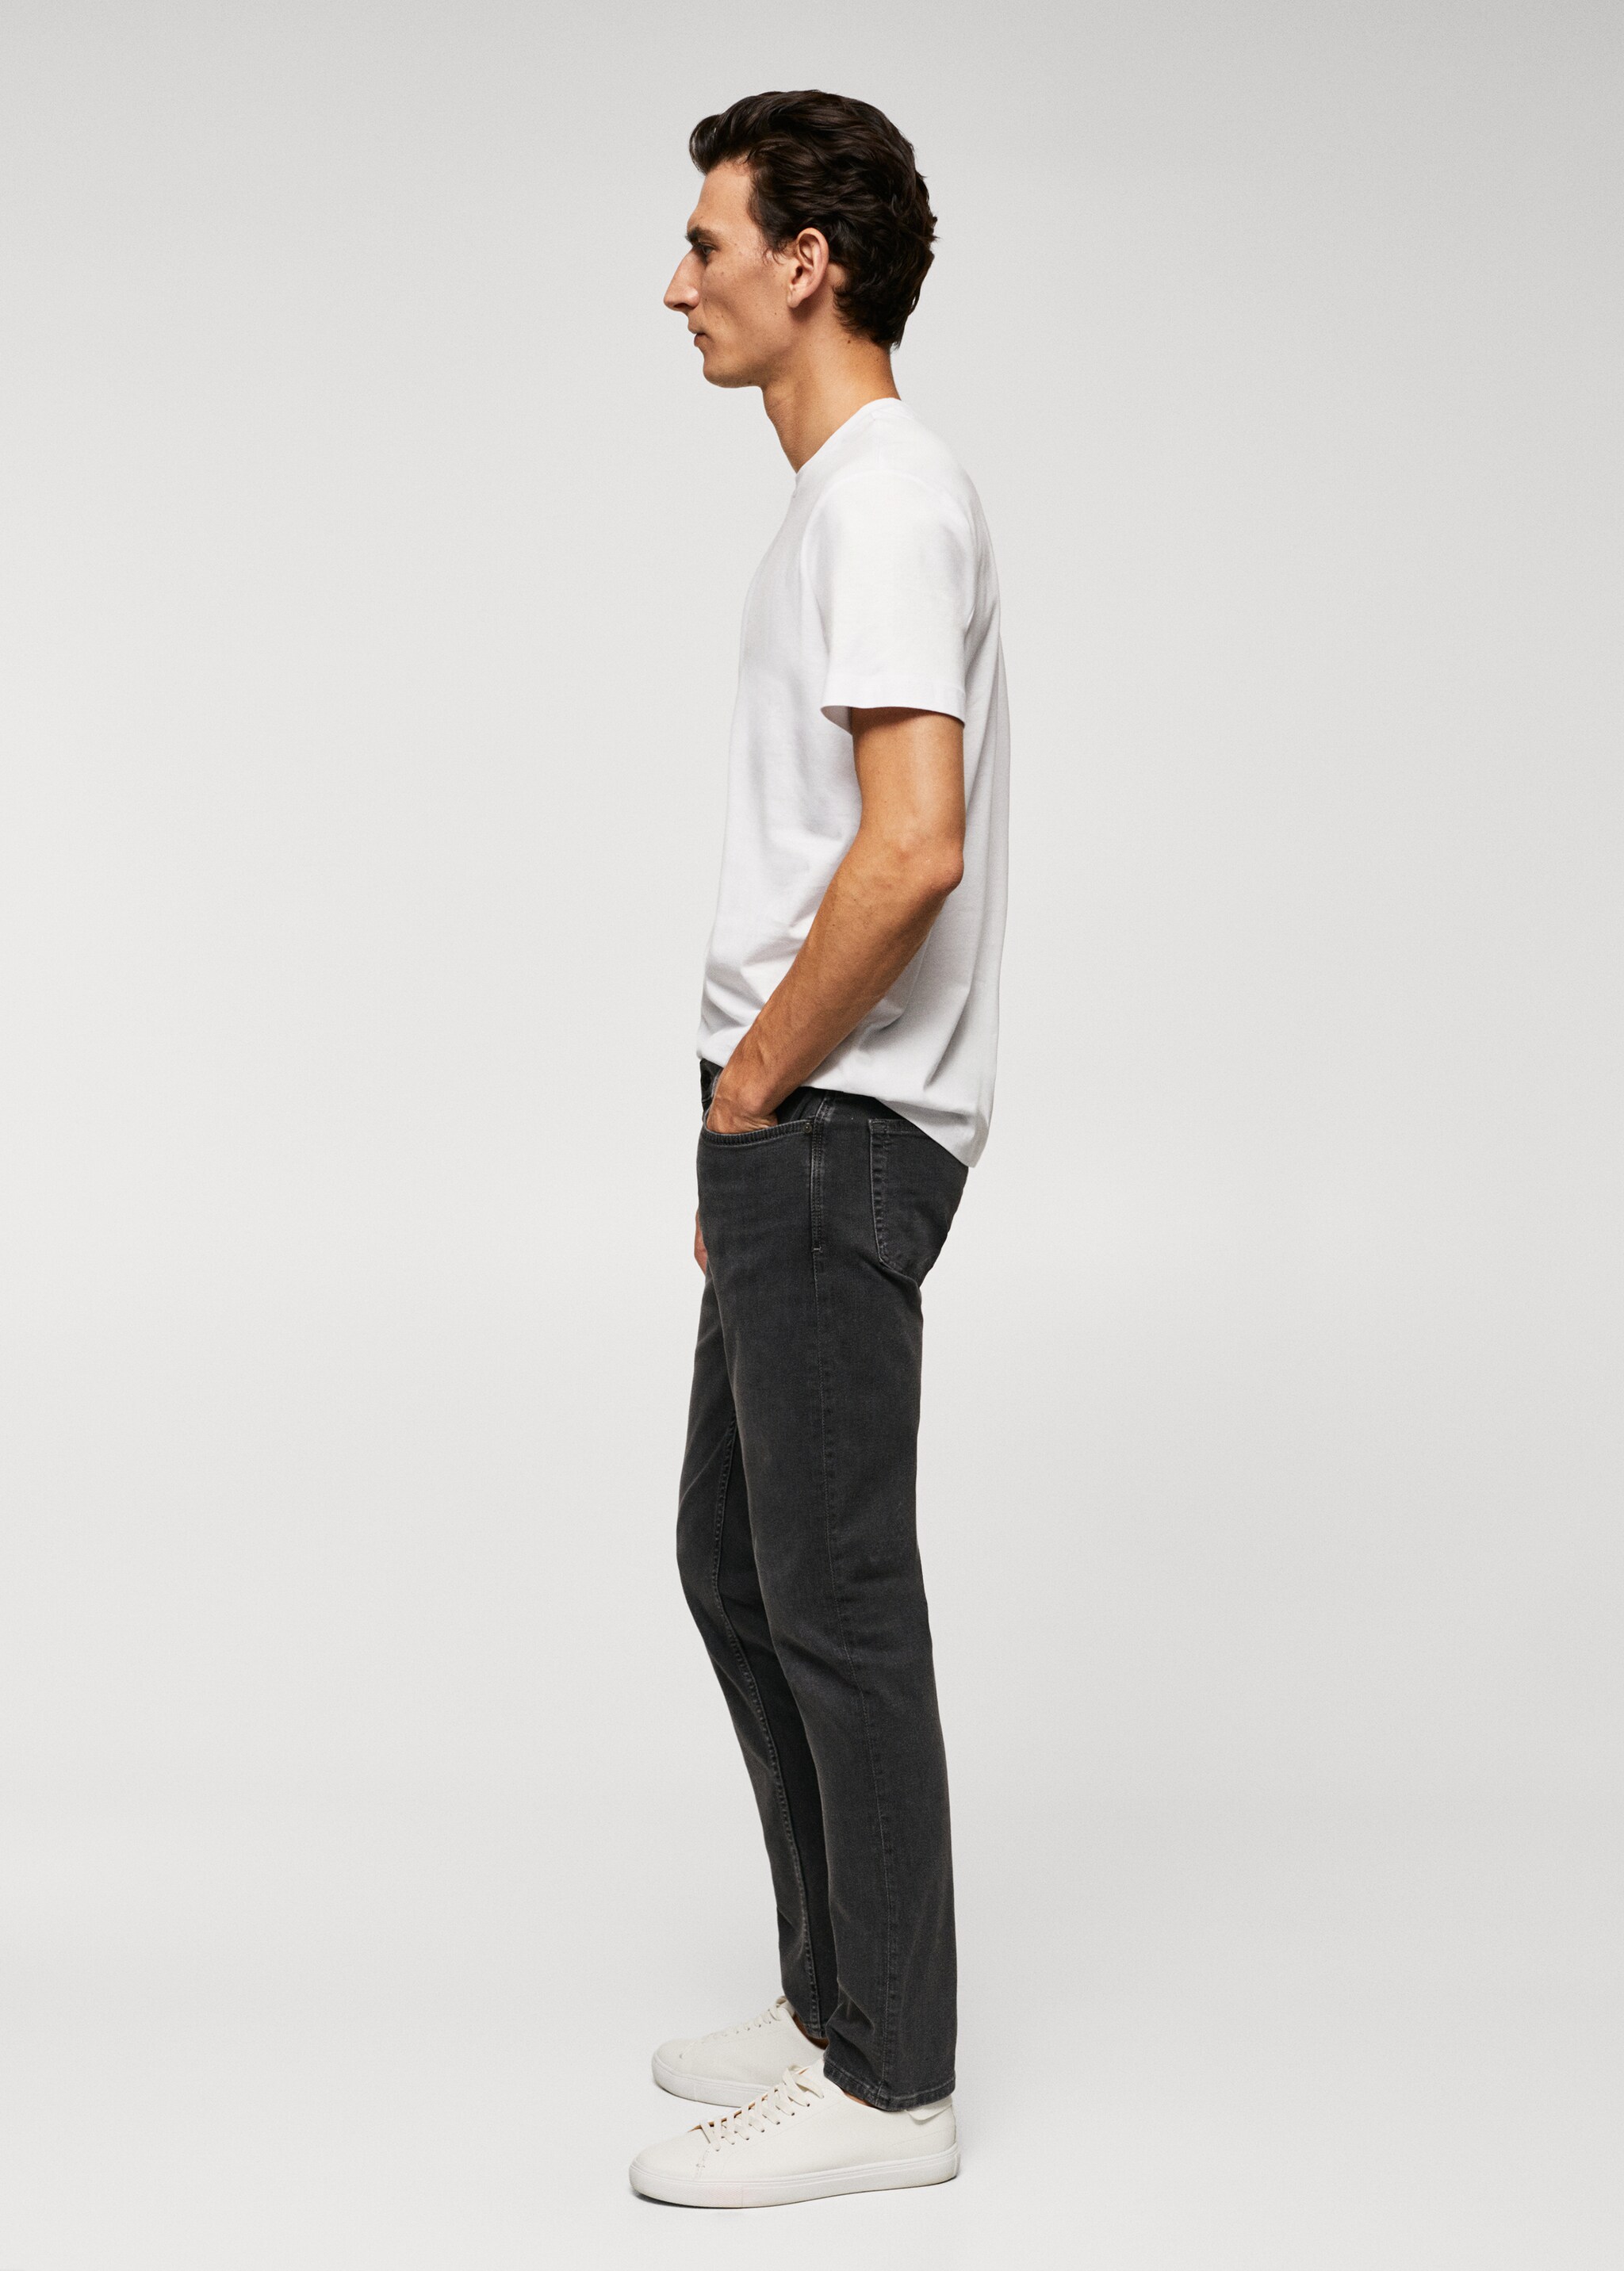 Jeans Patrick slim fit Ultra Soft Touch - Pormenor do artigo 2